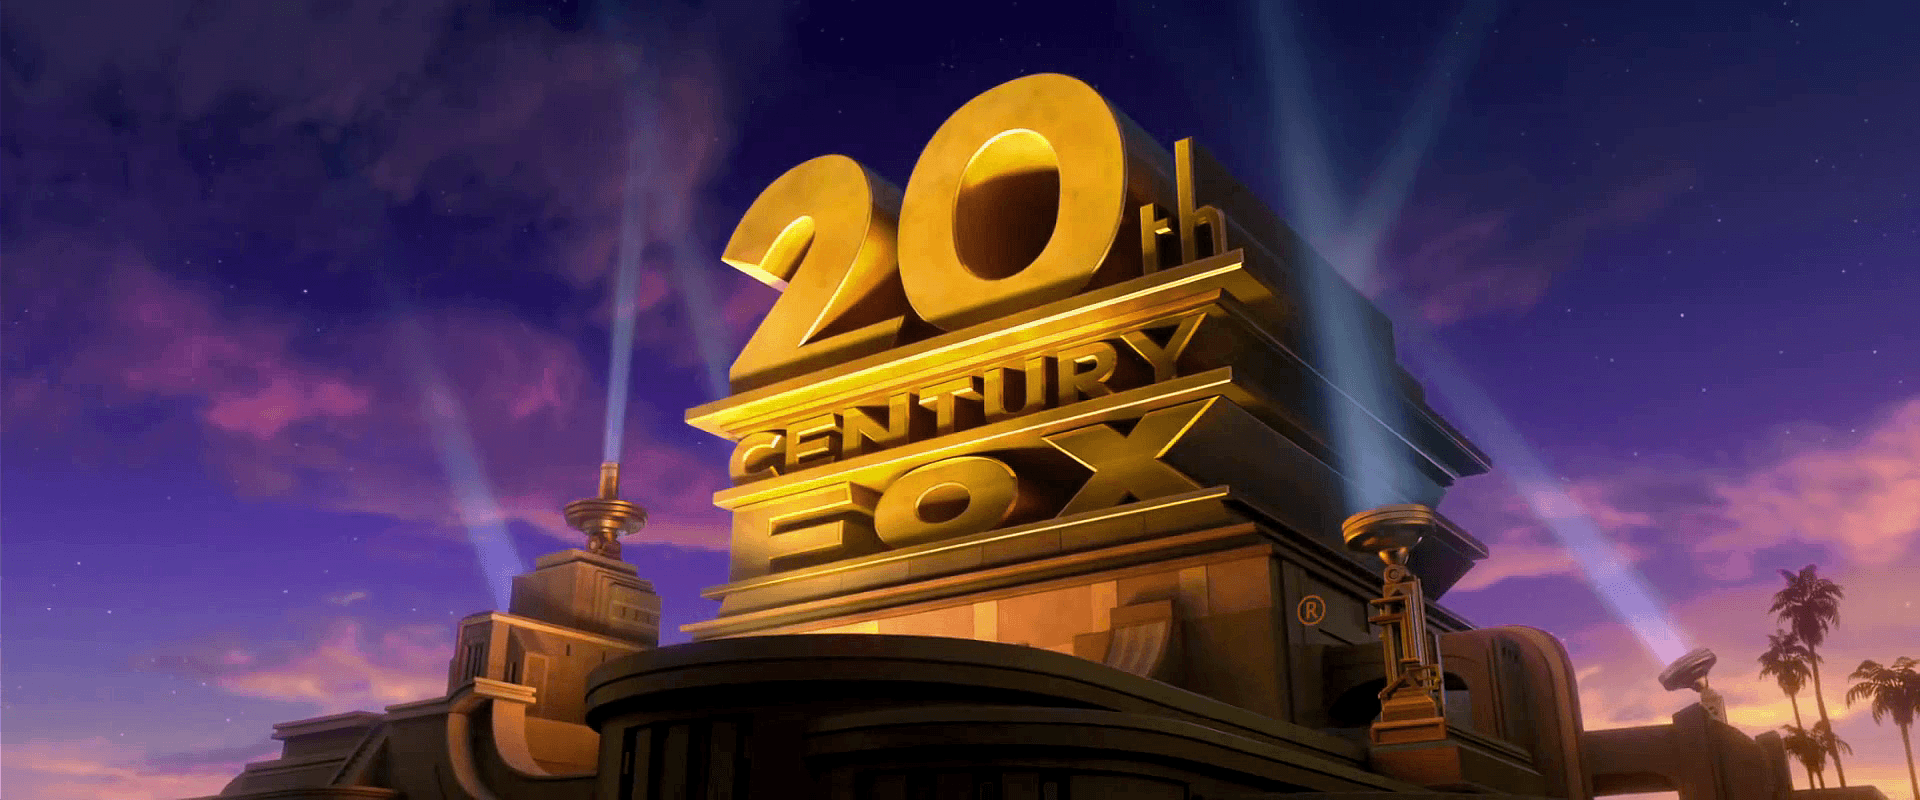 Twentieth Logo - 20th Century Fox | Simpsons Wiki | FANDOM powered by Wikia